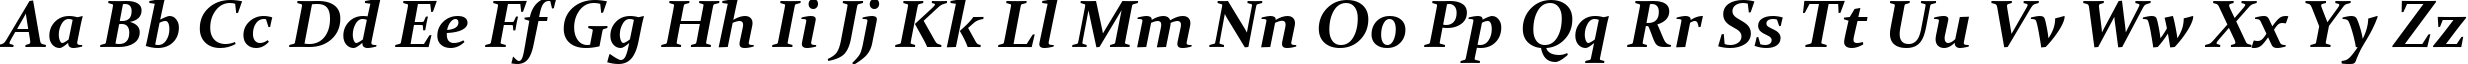 Пример написания английского алфавита шрифтом Constantia Bold Italic